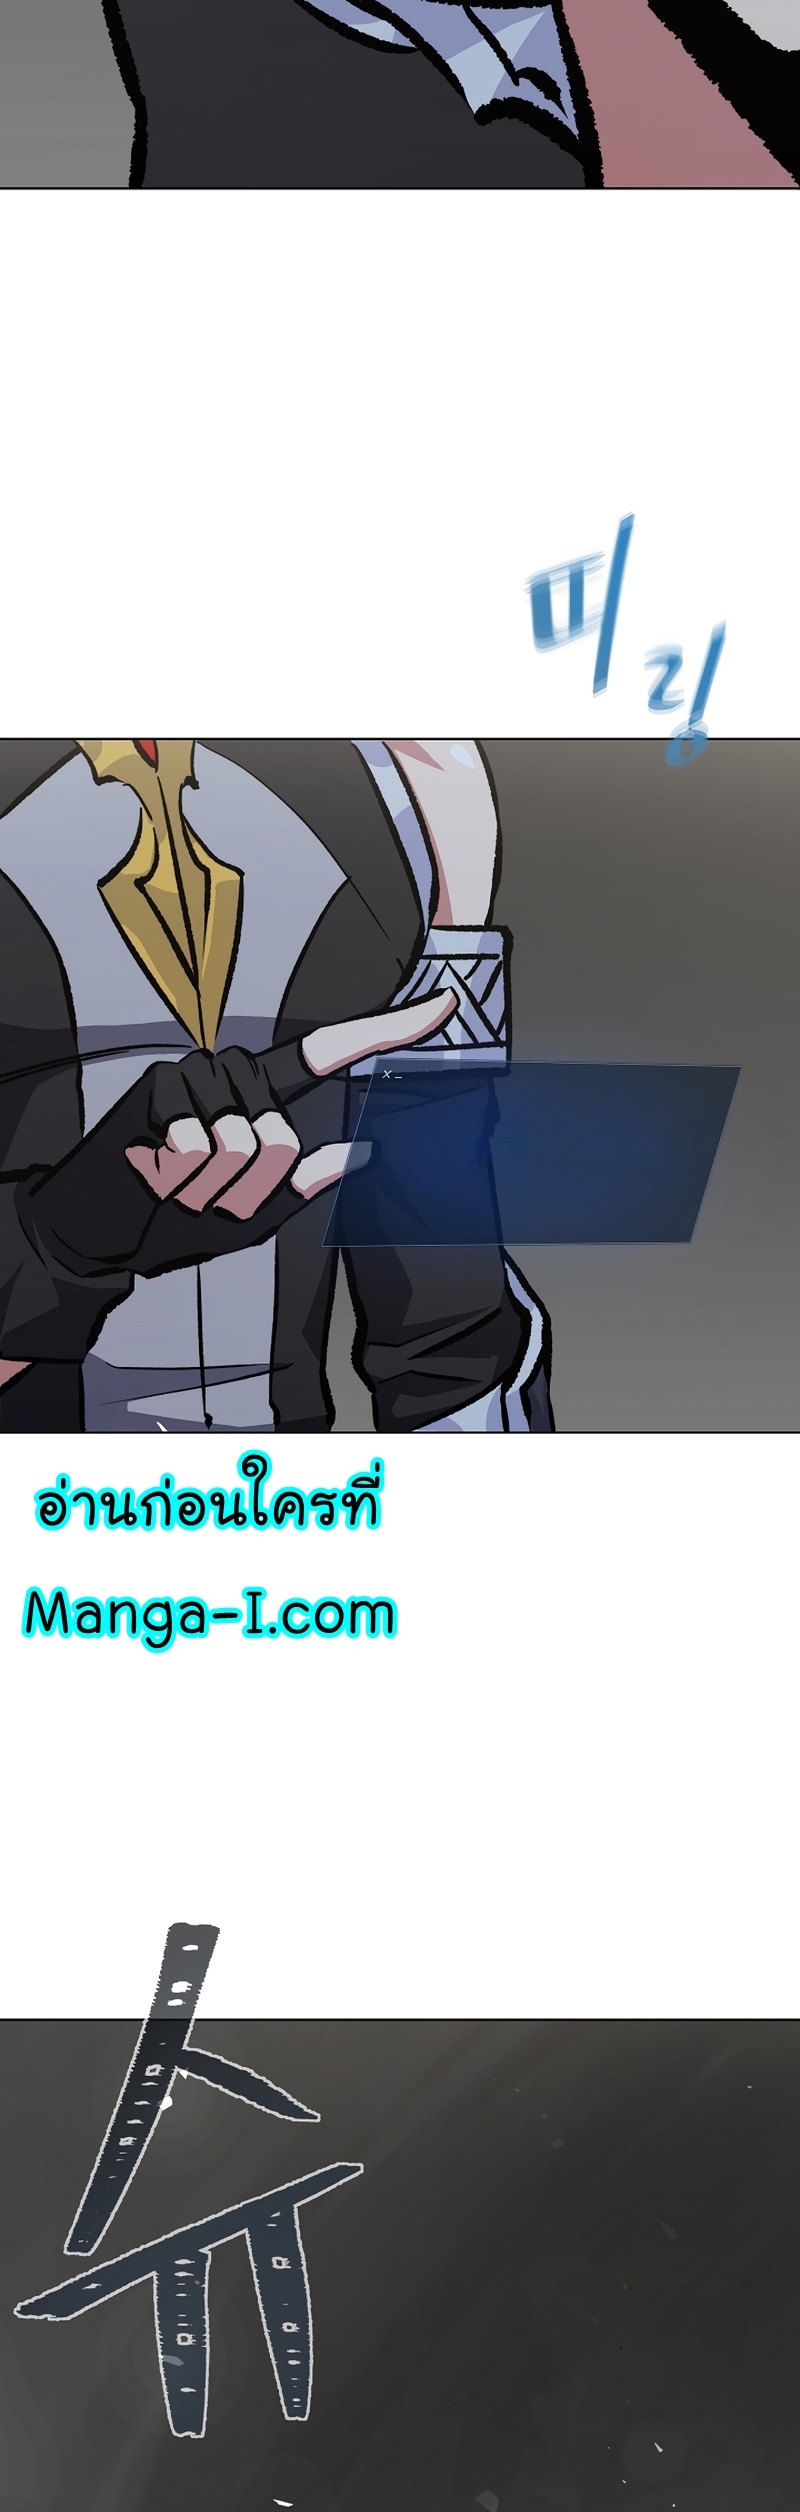 Manga Manhwa Level 1 Player 67 (12)